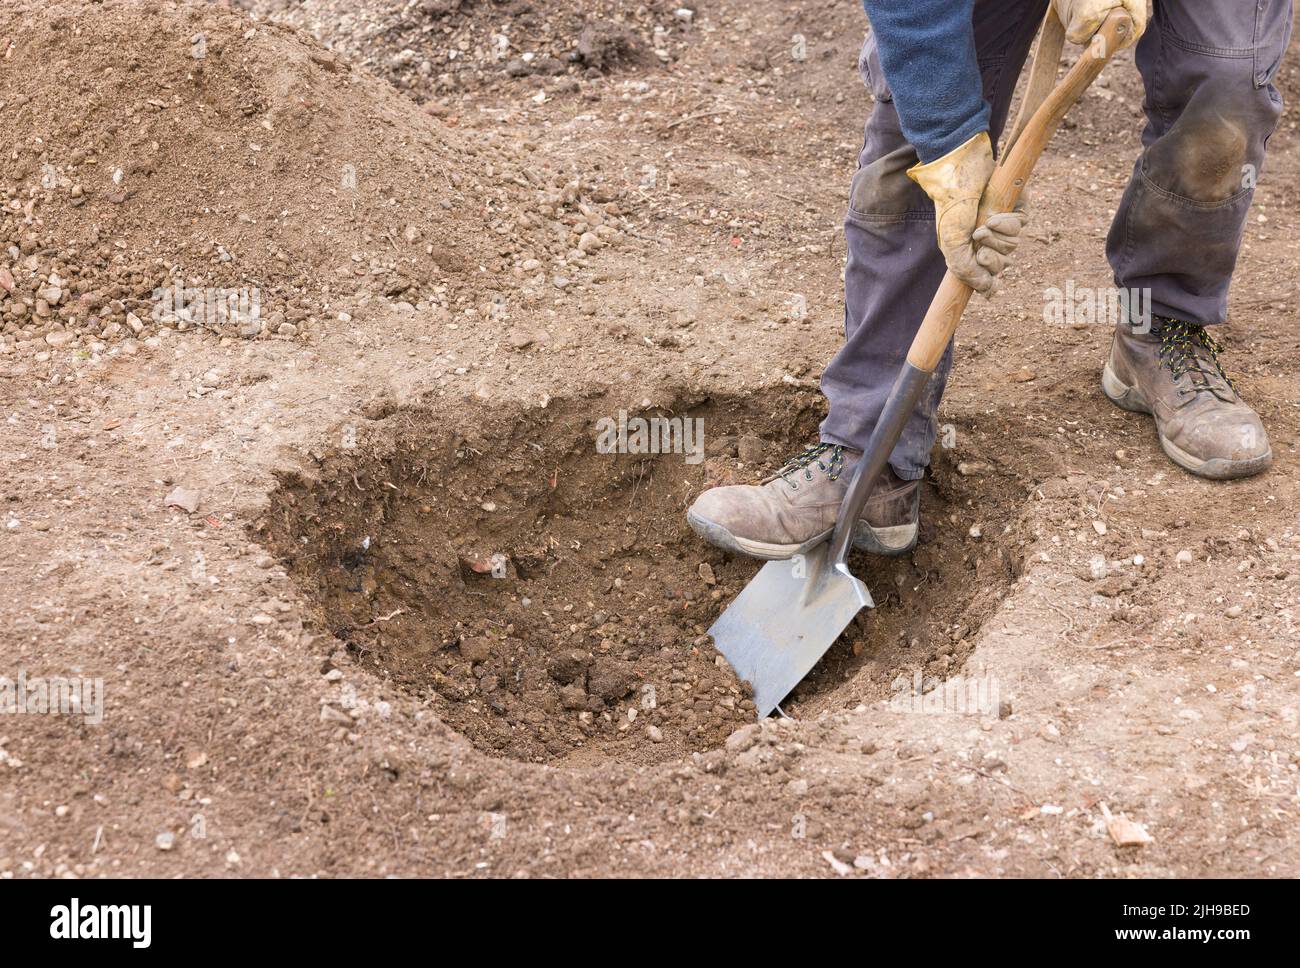 Jardinier creusant un trou dans le sol avec une bêche, se préparant à planter un arbre dans un jardin britannique Banque D'Images